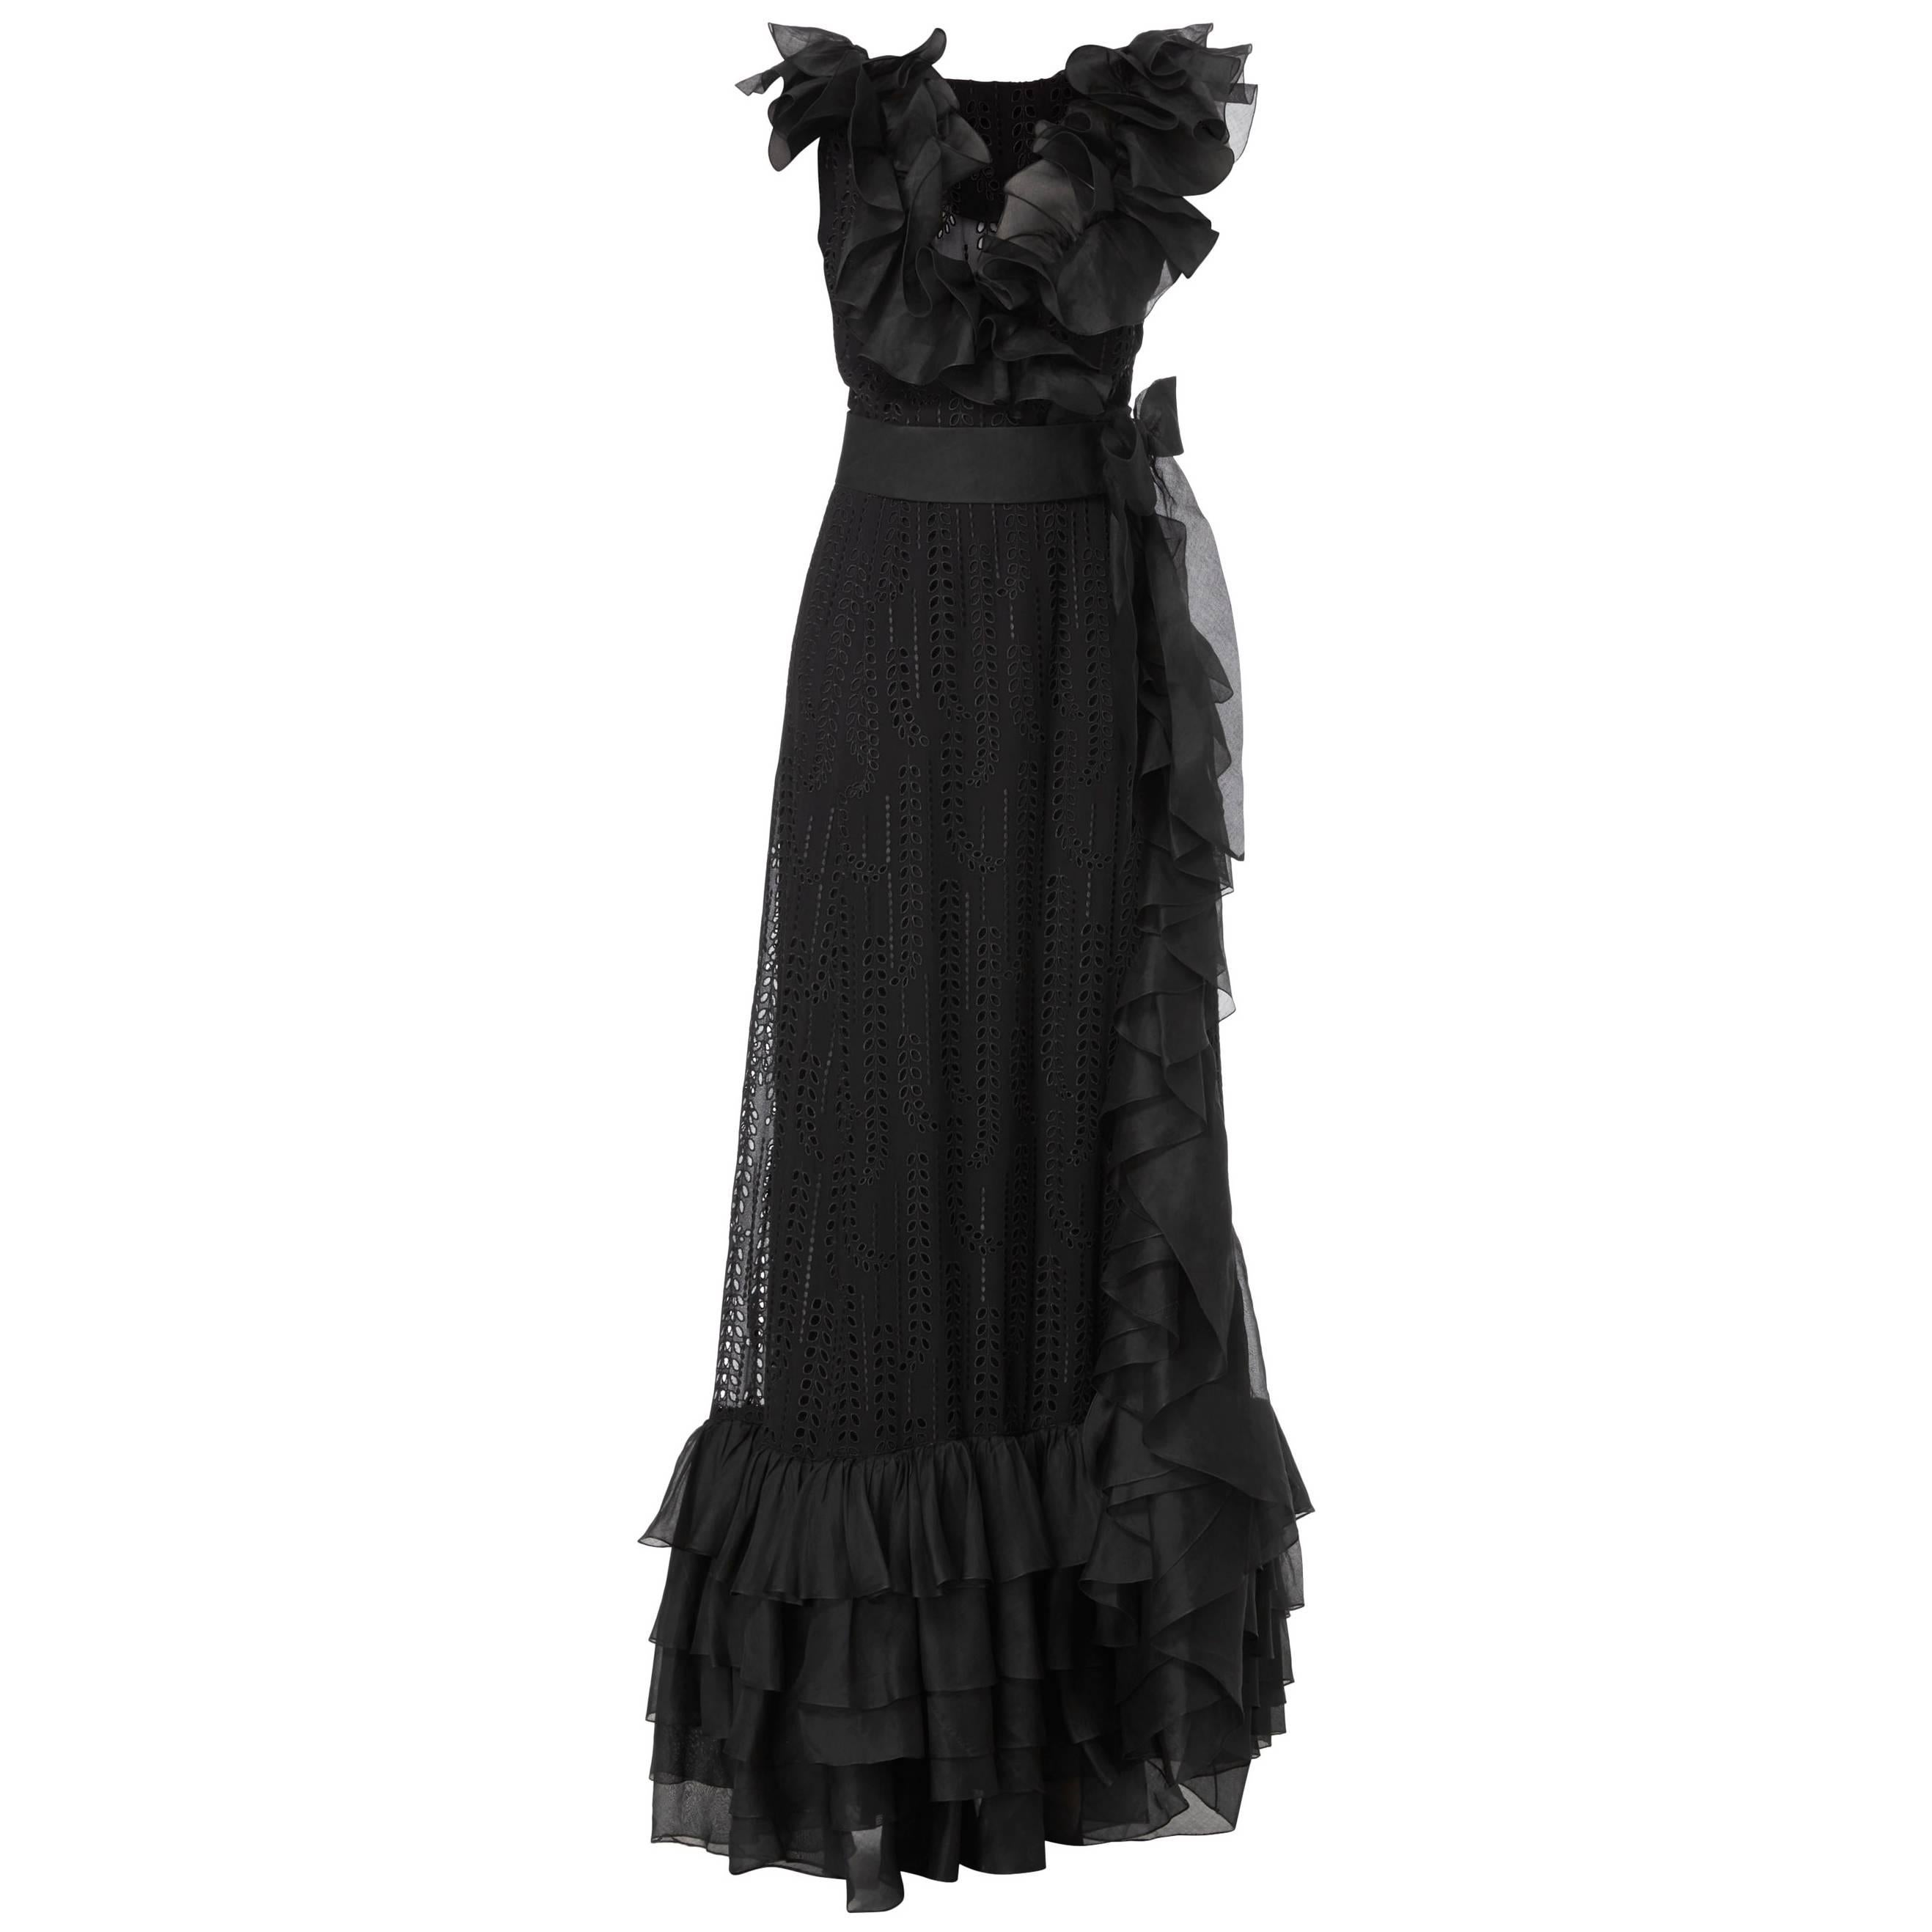 Chanel haute couture black gown, circa 1974